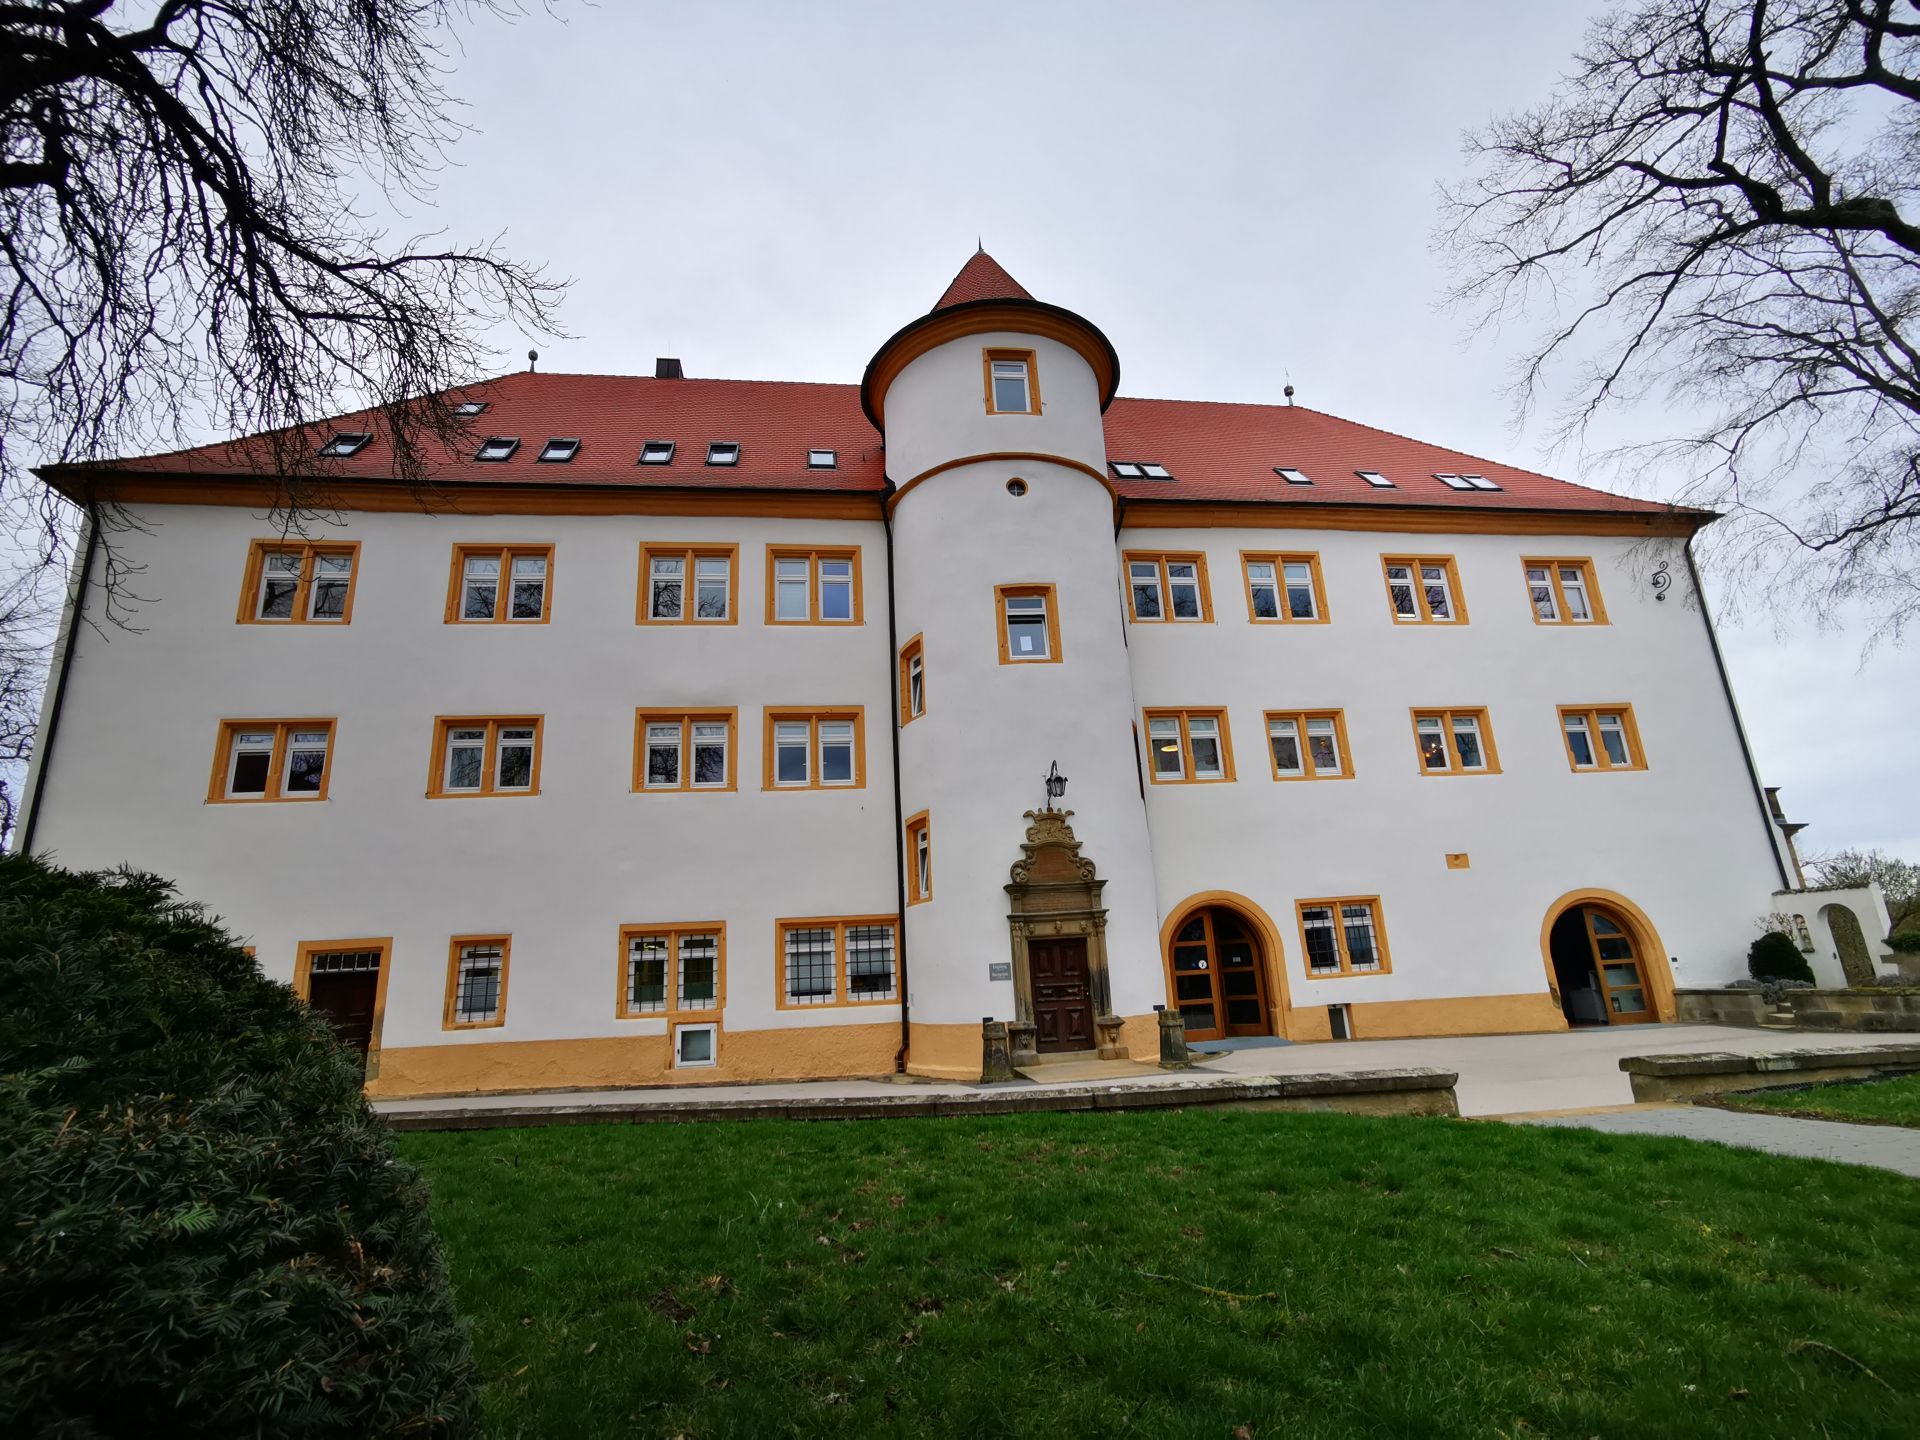 Централата на Hohenstein е разположена в замък